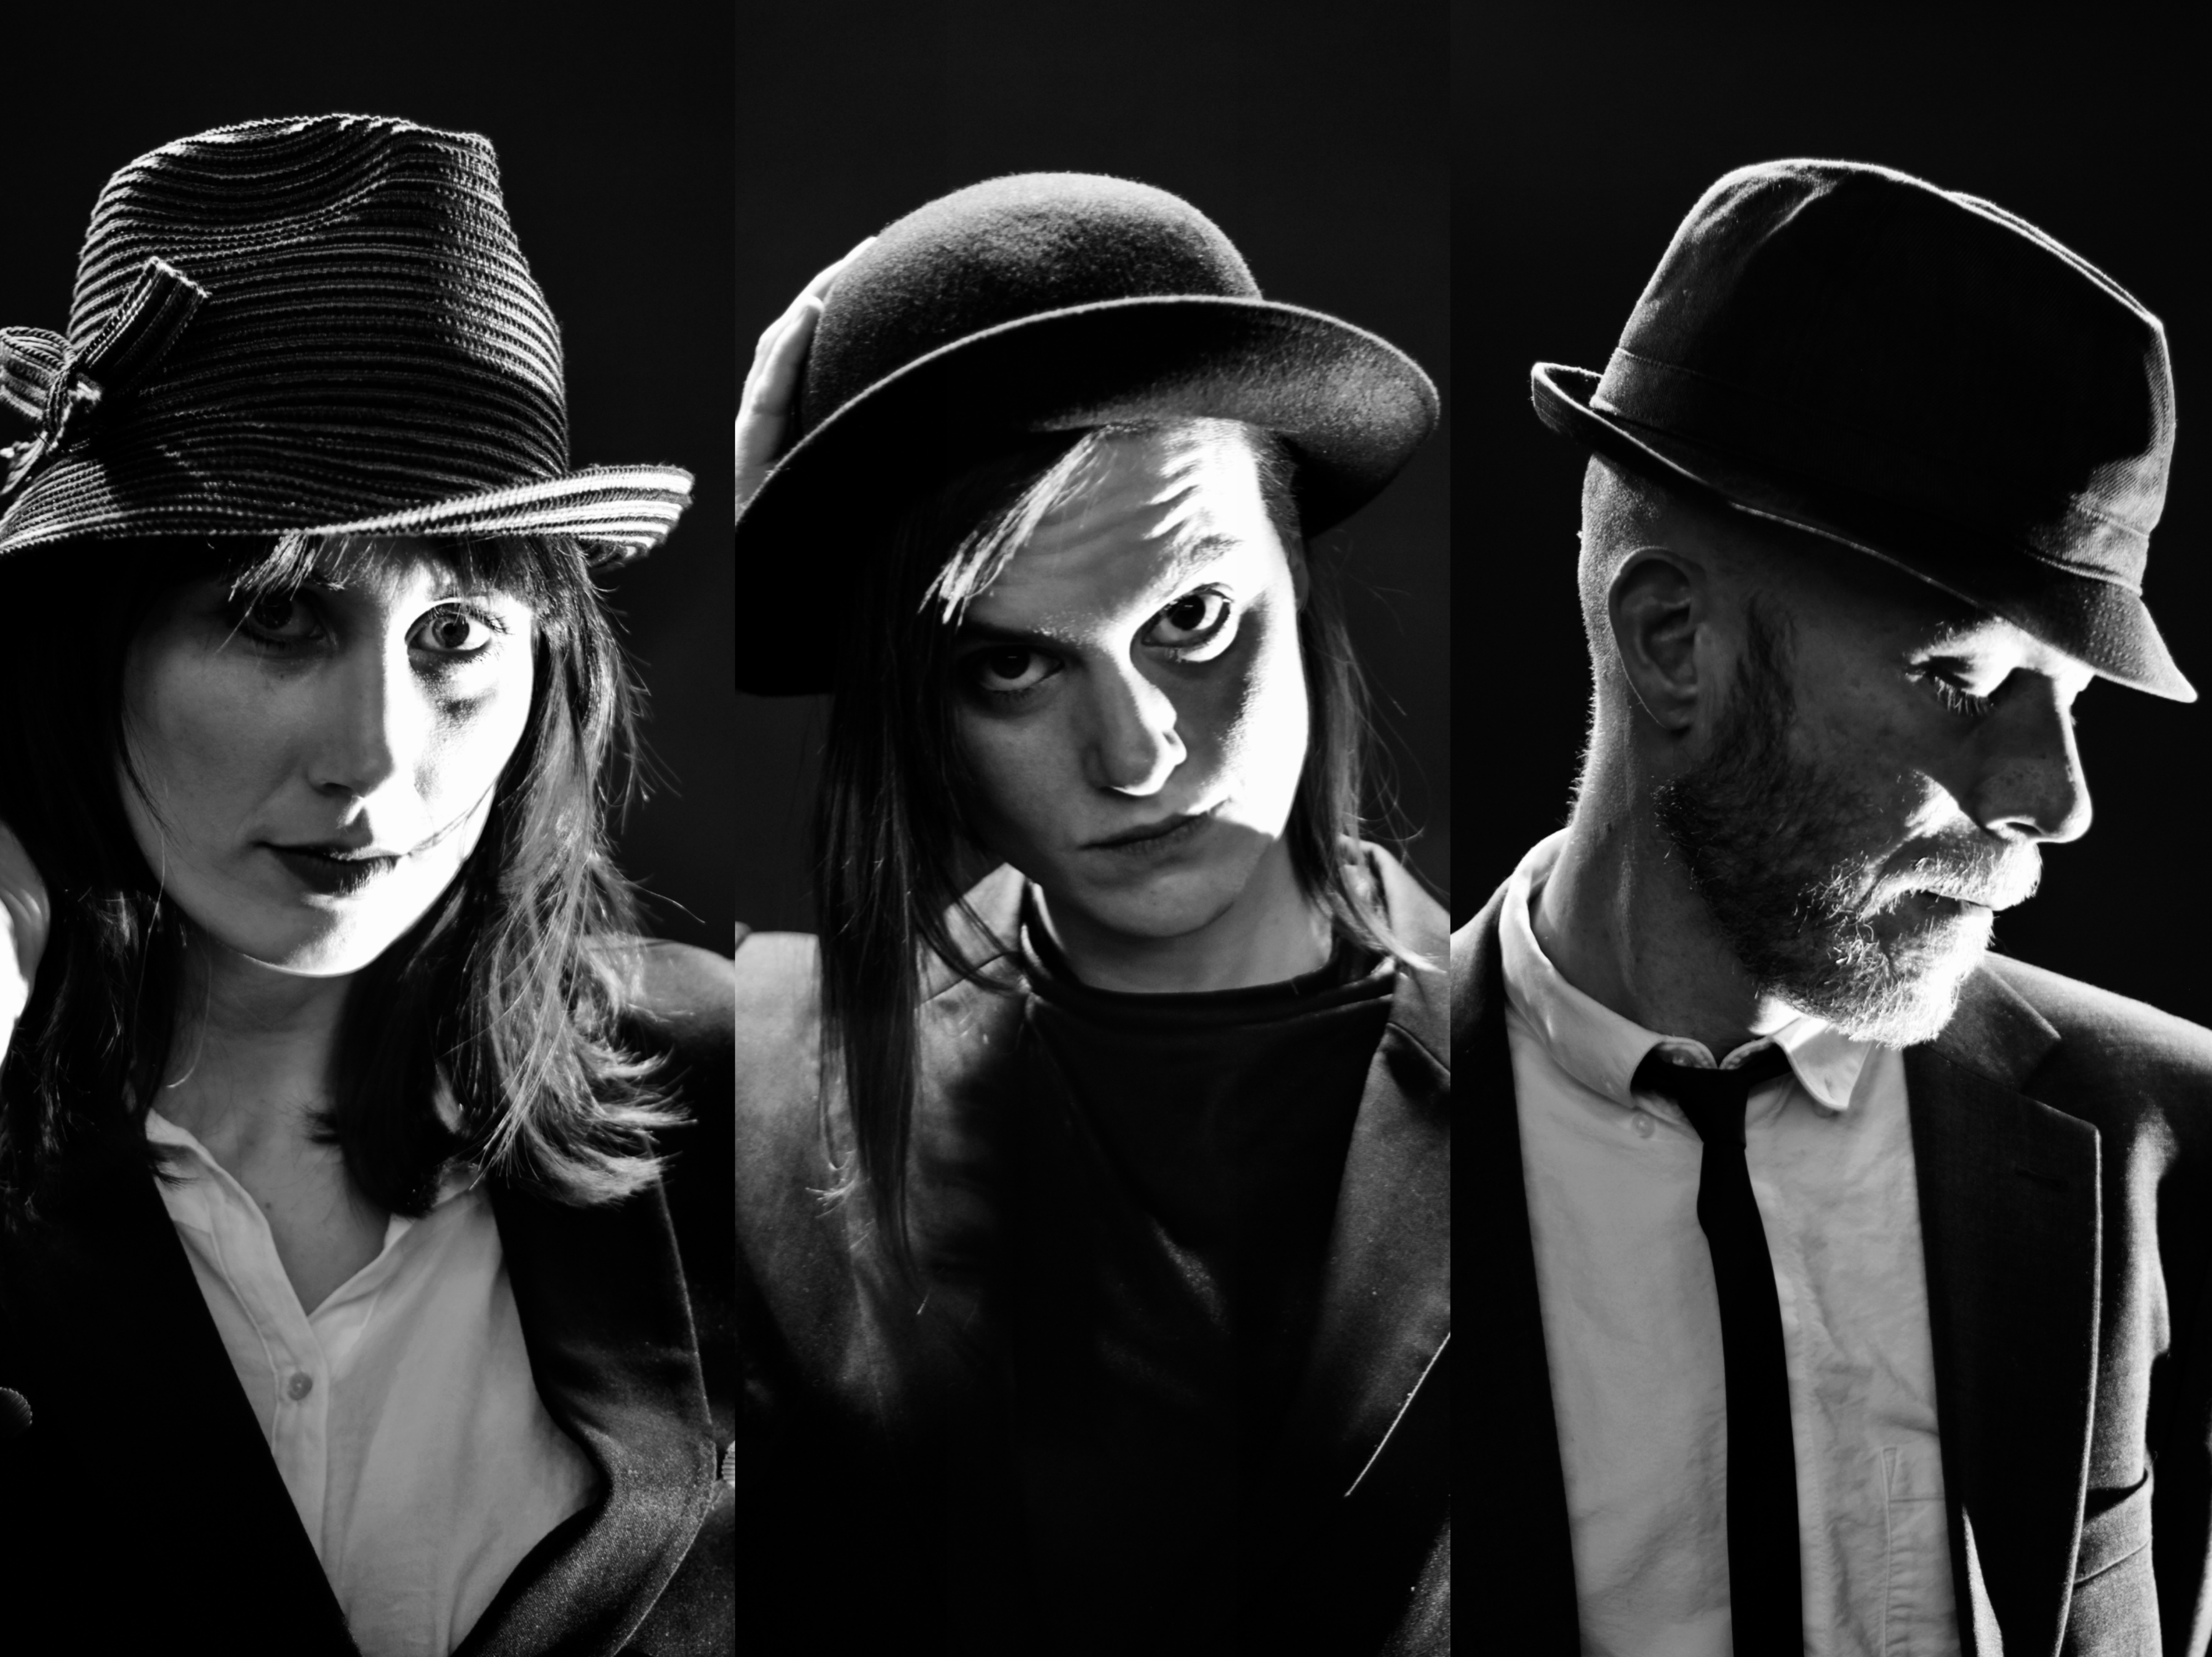 En svartvit bild med musikerna i kostymer och hatt.